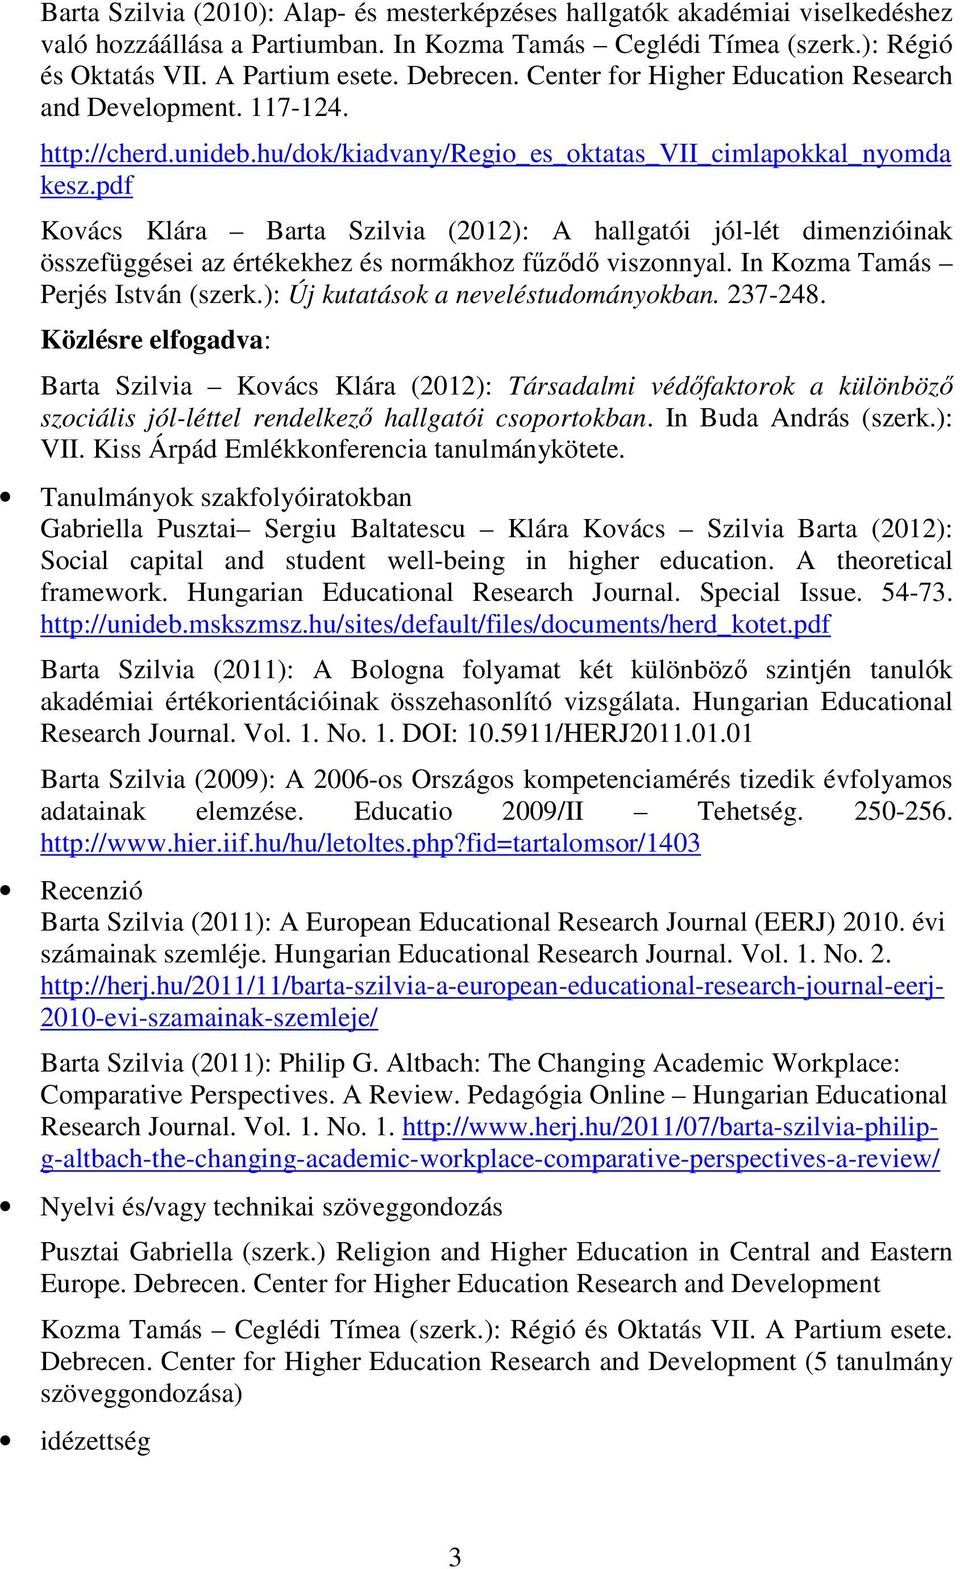 pdf Kovács Klára Barta Szilvia (2012): A hallgatói jól-lét dimenzióinak összefüggései az értékekhez és normákhoz főzıdı viszonnyal. In Kozma Tamás Perjés István (szerk.